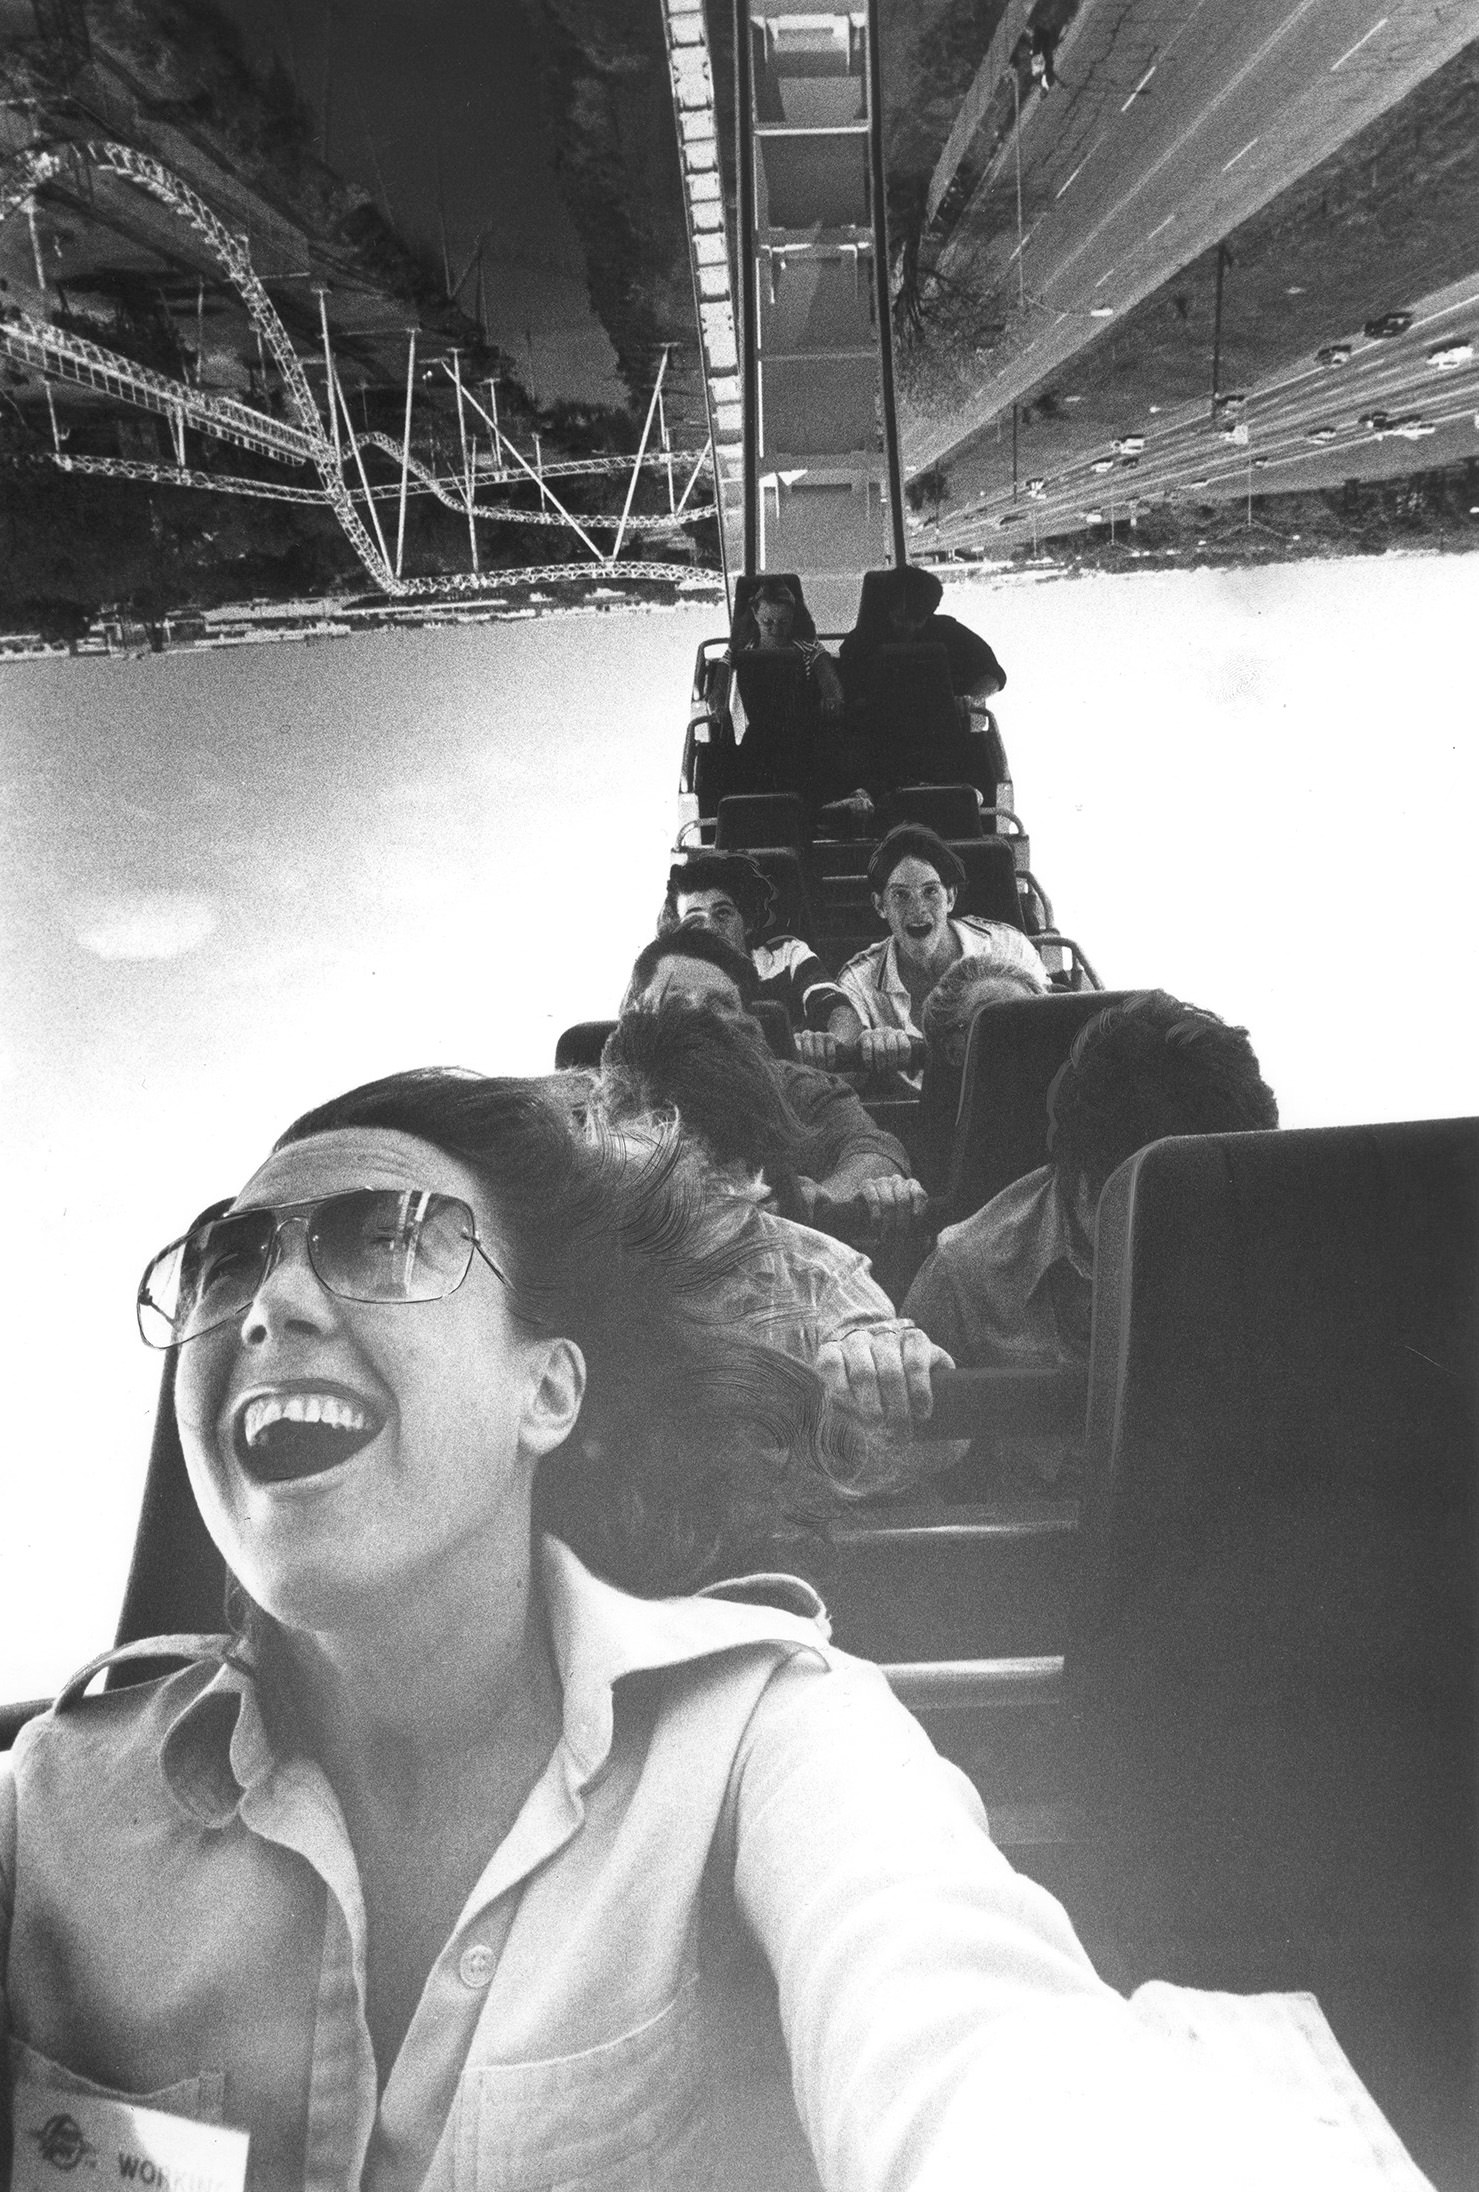 Six Flags Over Texas, amusement park, Arlington, Texas, 1978